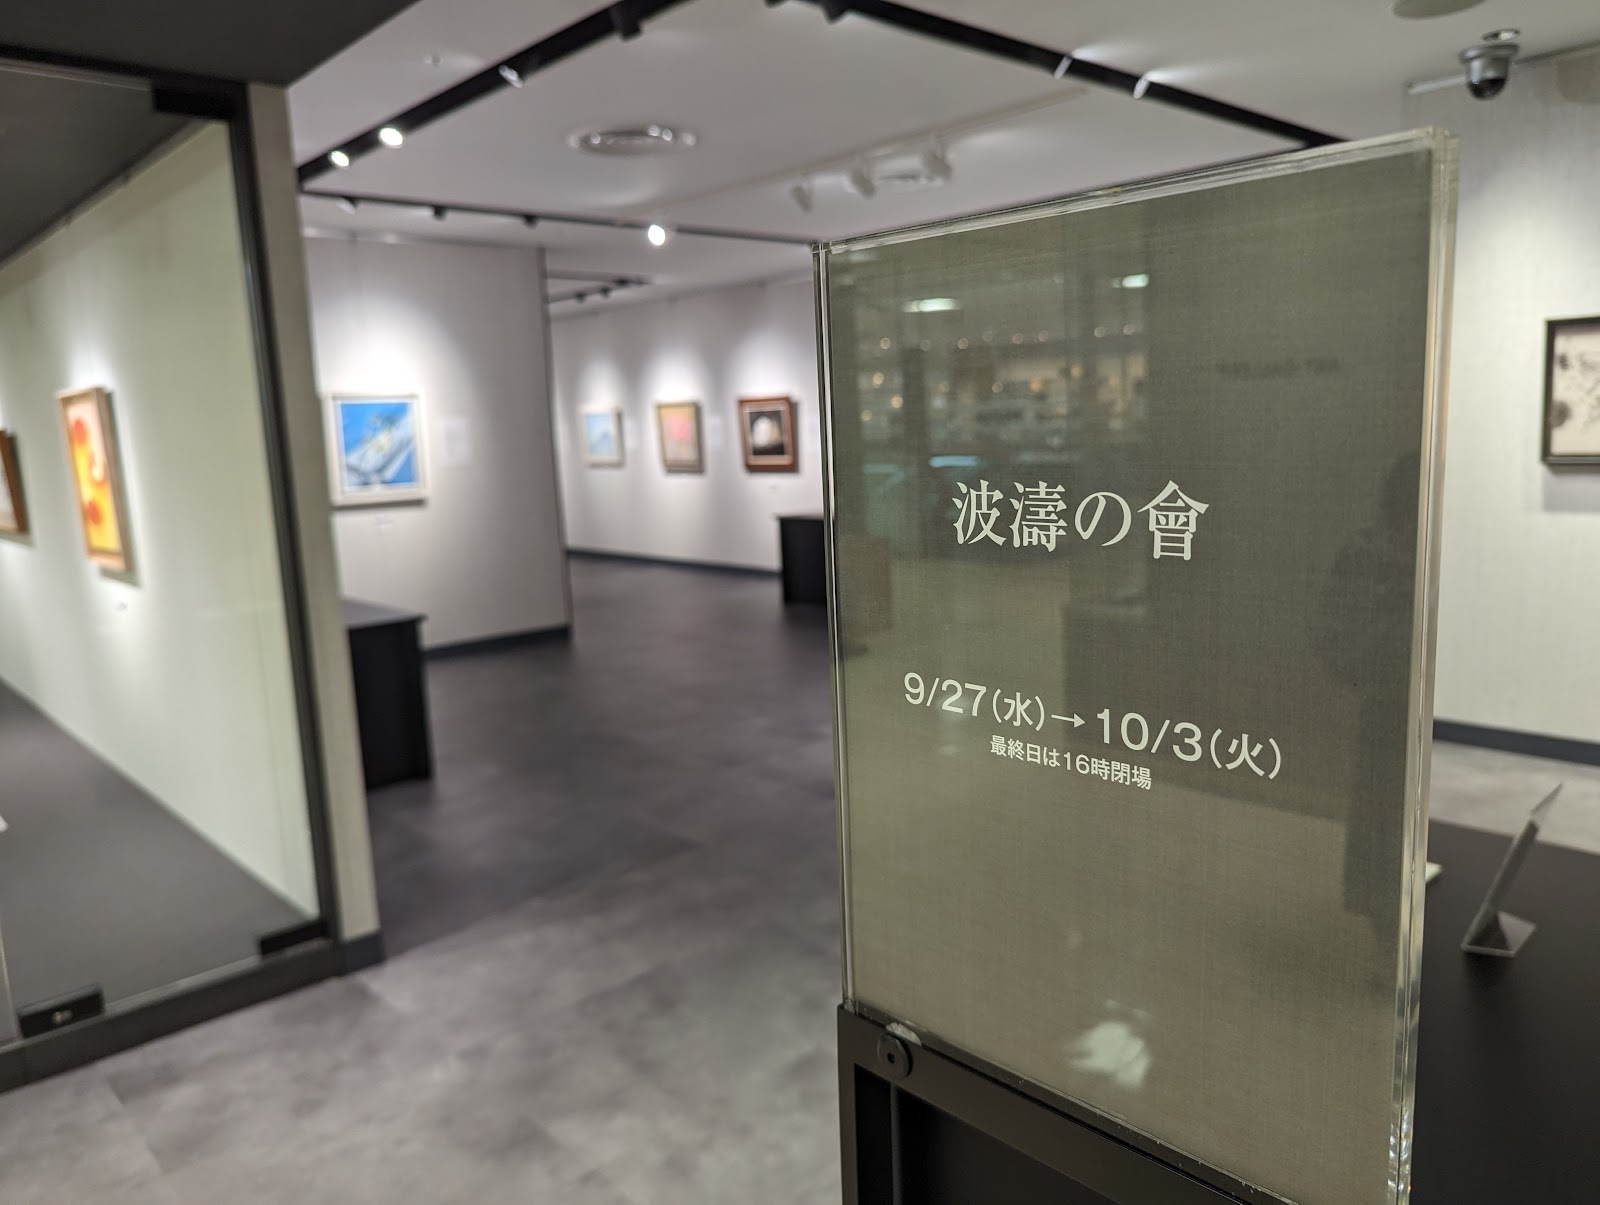 松坂屋上野店 美術画廊の写真